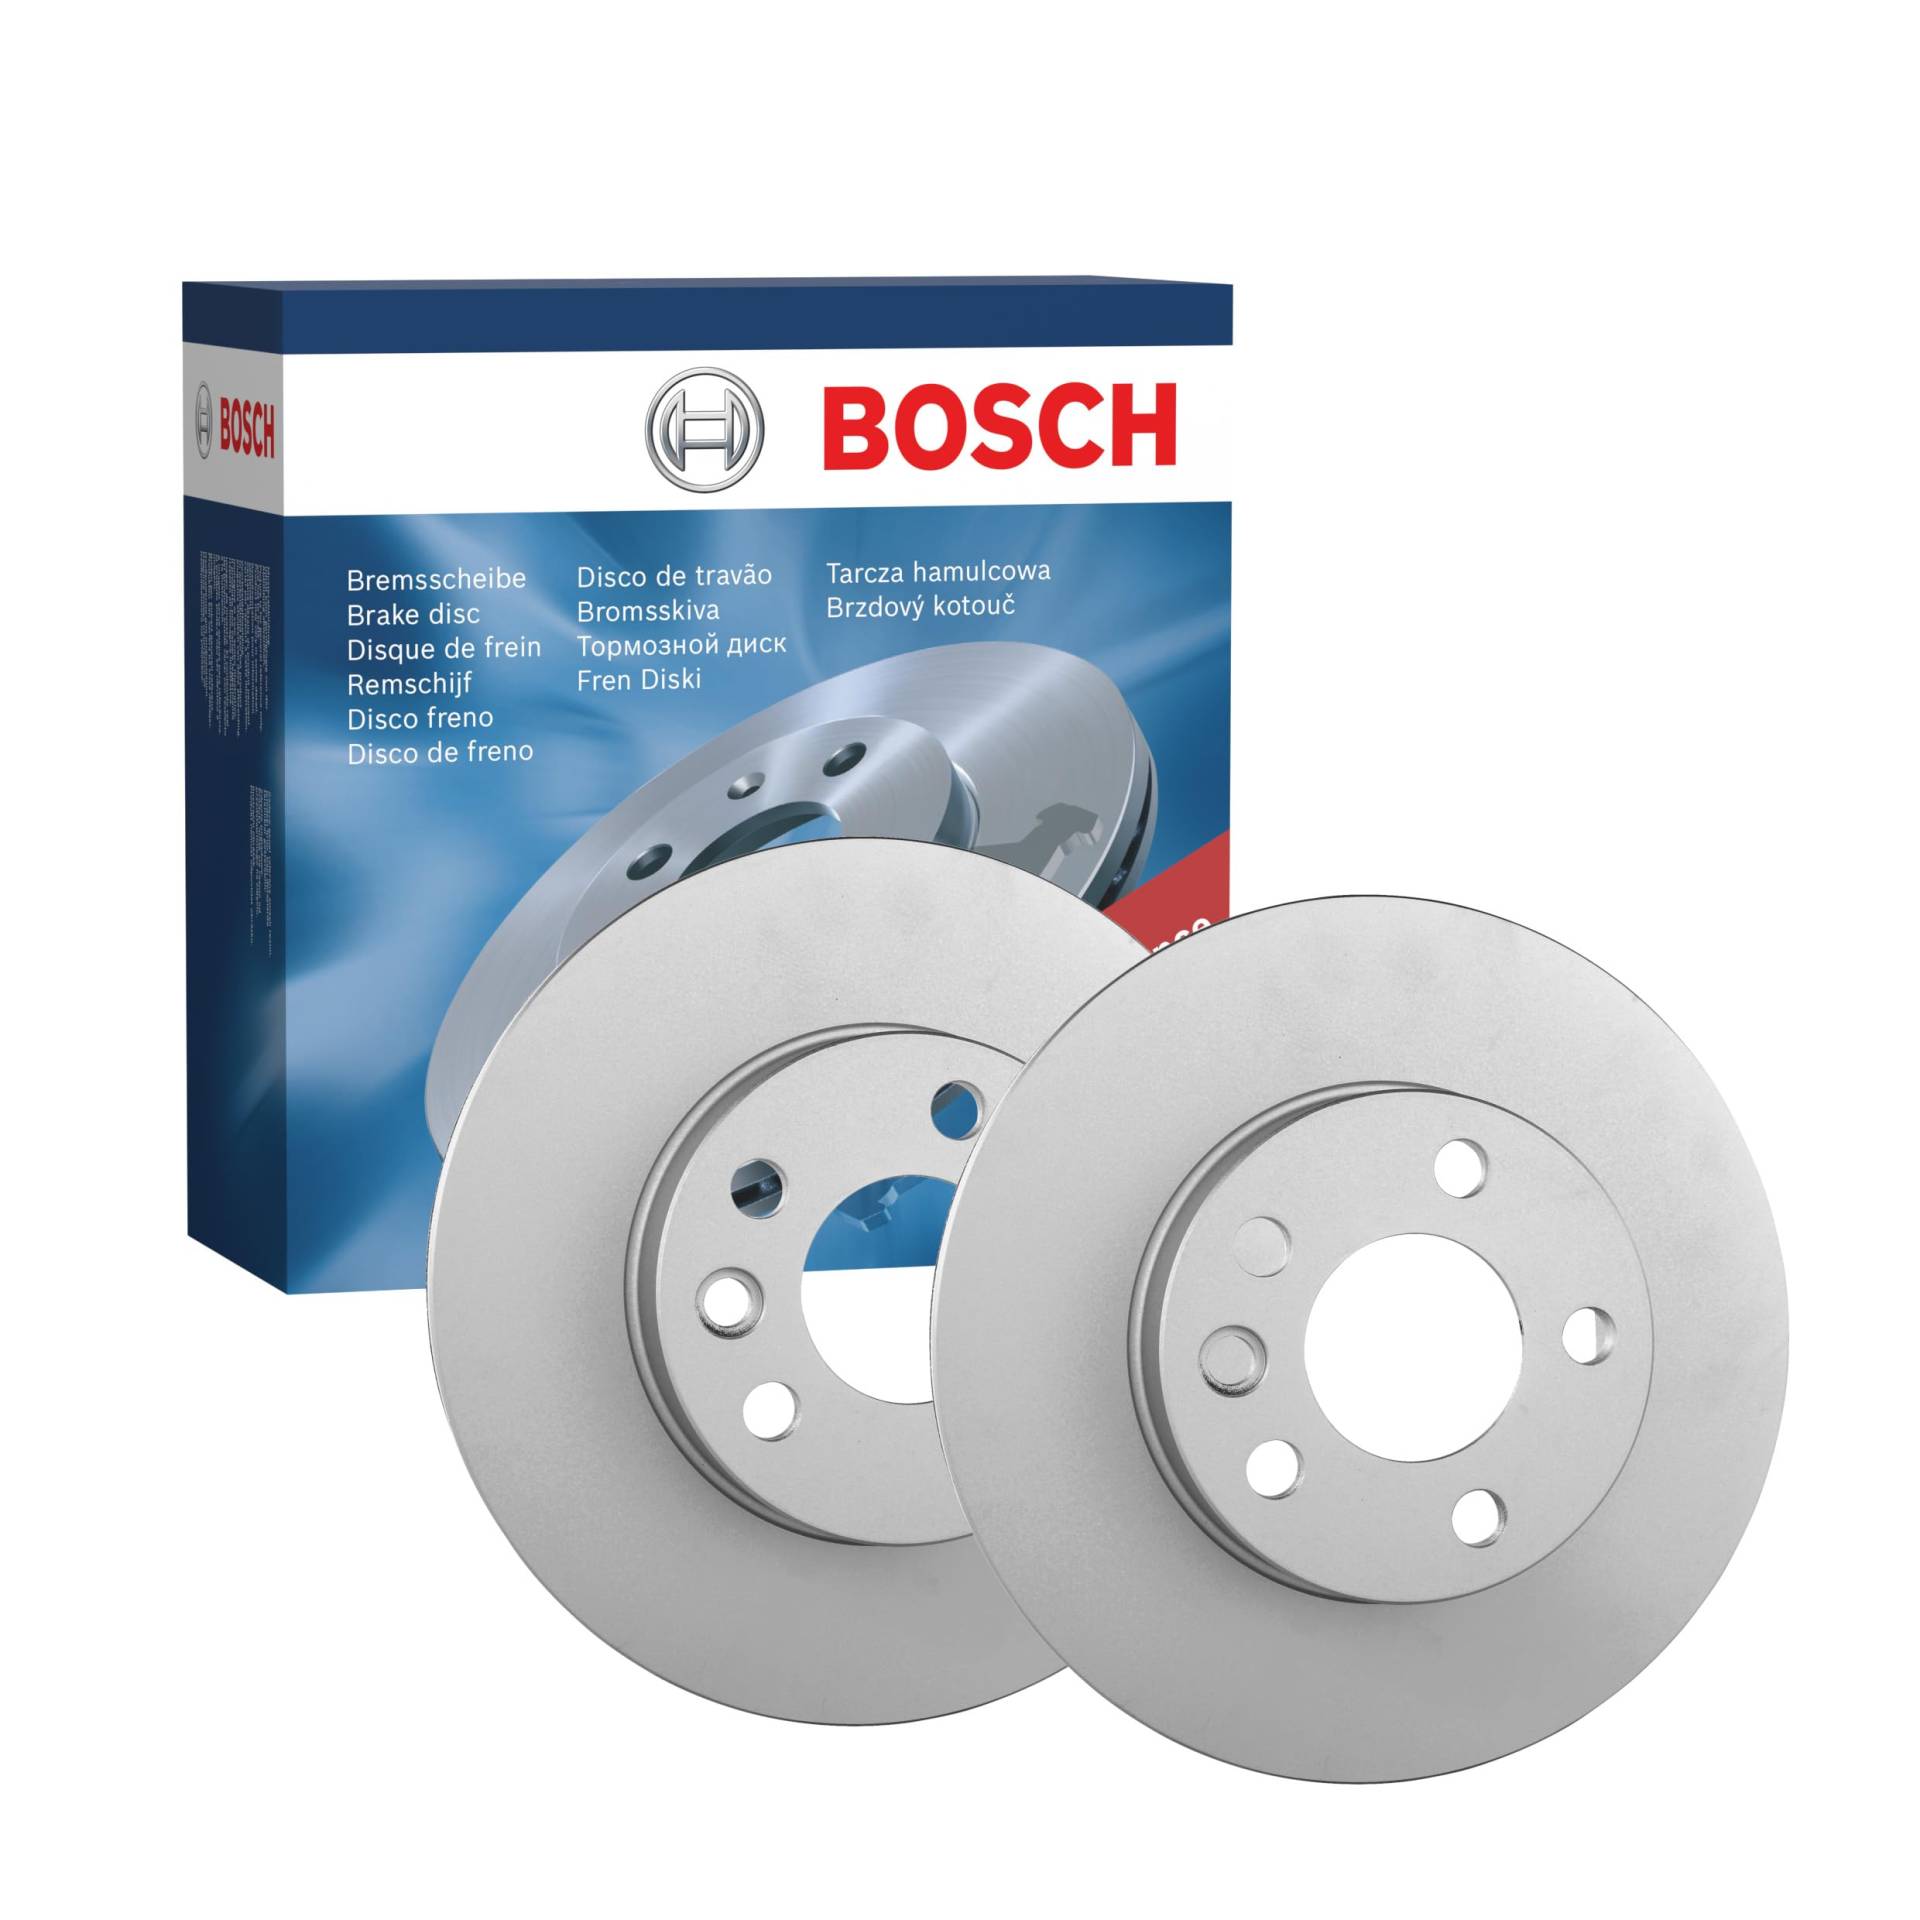 Bosch BD746 Bremsscheiben - Vorderachse - ECE-R90 Zertifizierung - zwei Bremsscheiben pro Set von Bosch Automotive